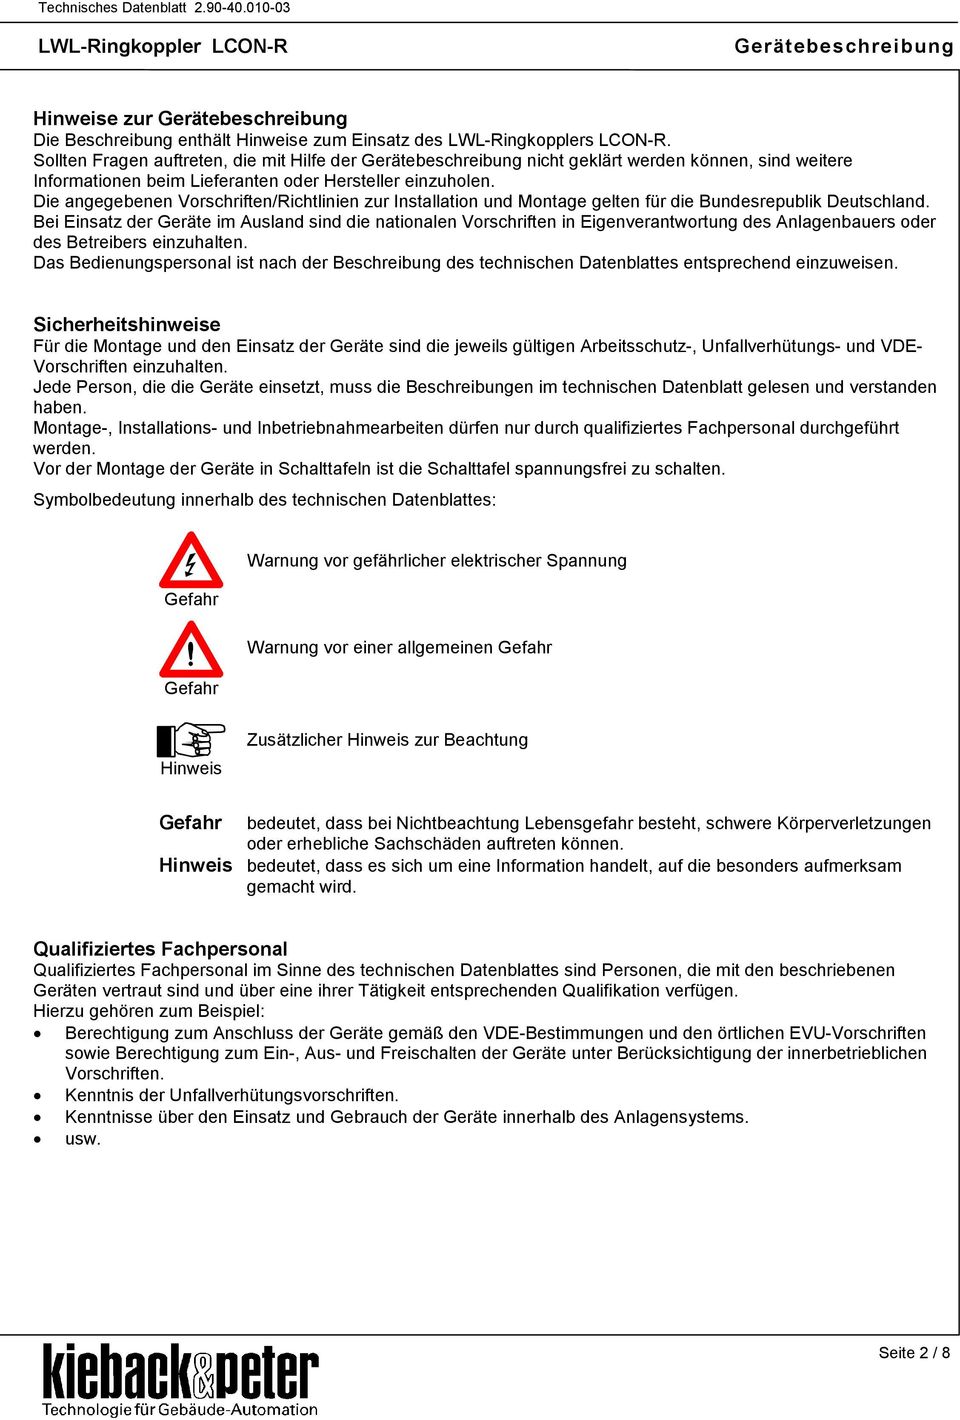 ie angegebenen Vorschriften/Richtlinien zur Installation und Montage gelten für die Bundesrepublik eutschland.